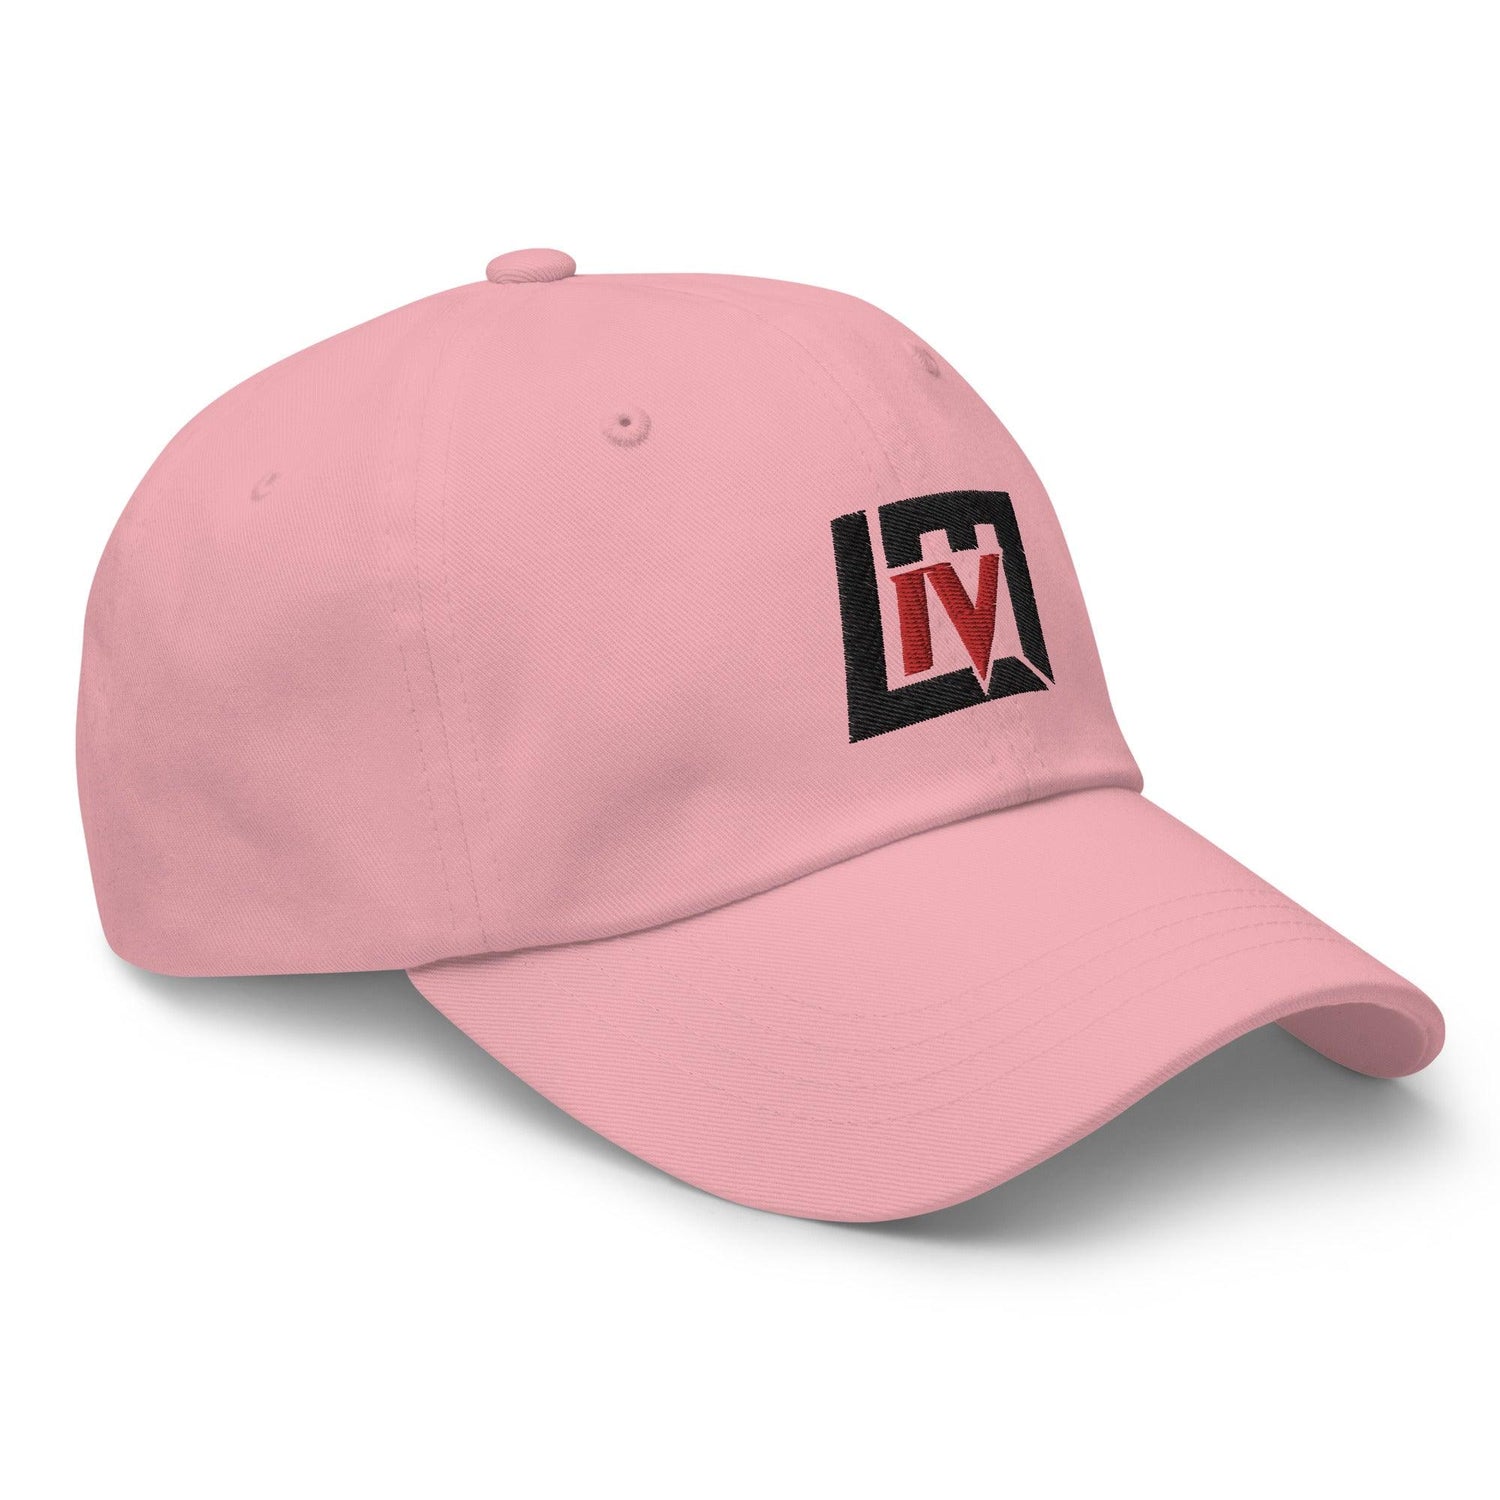 Lorenzo Mauldin IV "Elite" hat - Fan Arch